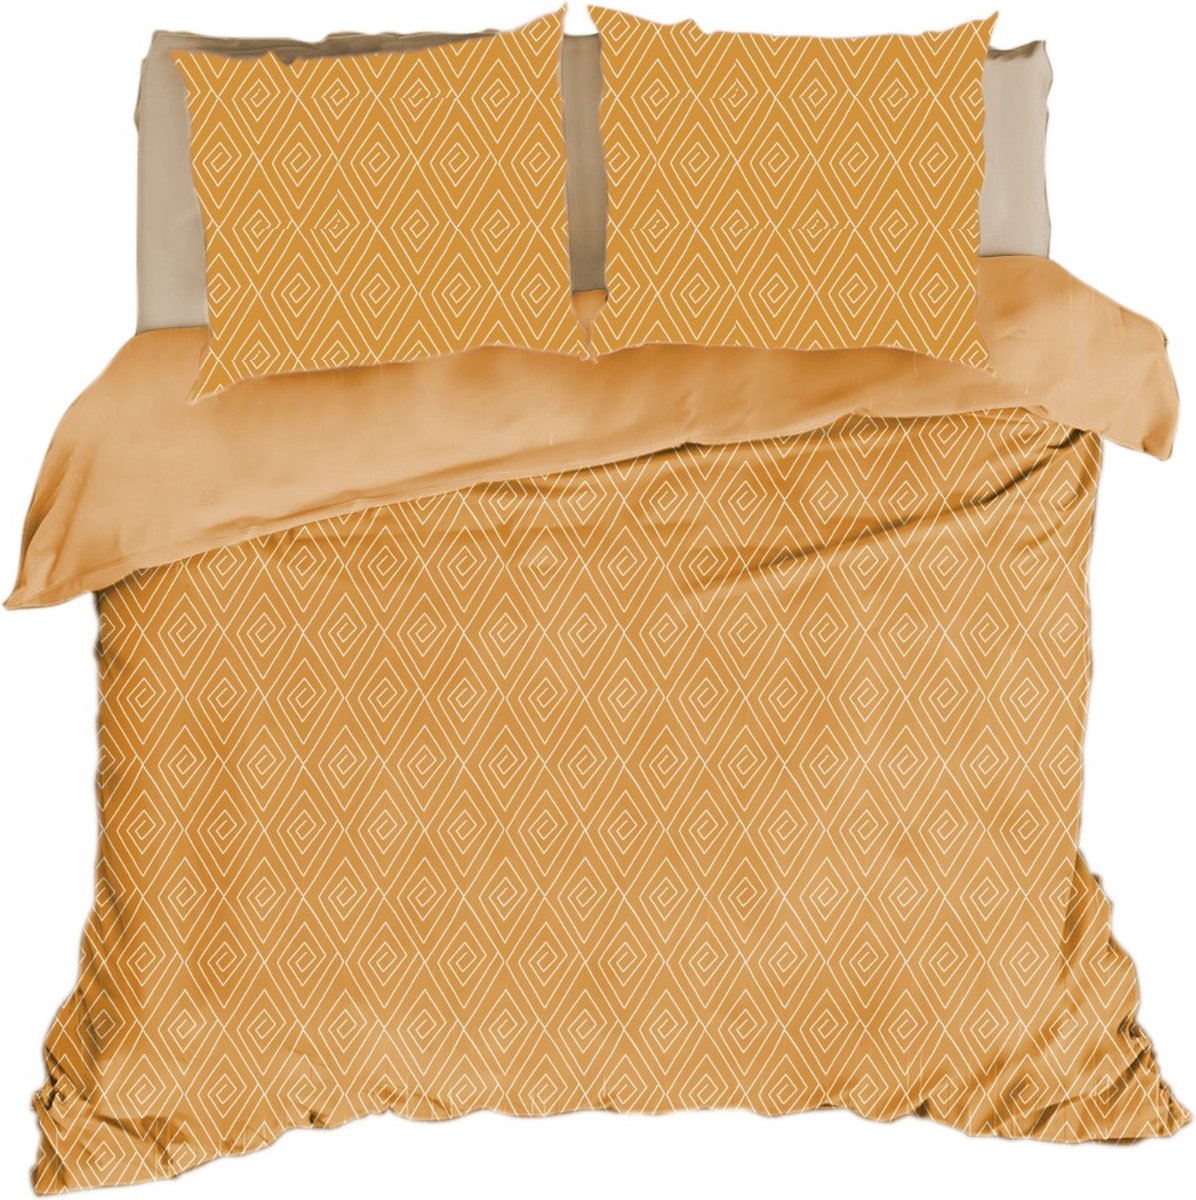 Dekbedovertrek Boho-Chic,240*200/220cm + 2 pillowcases